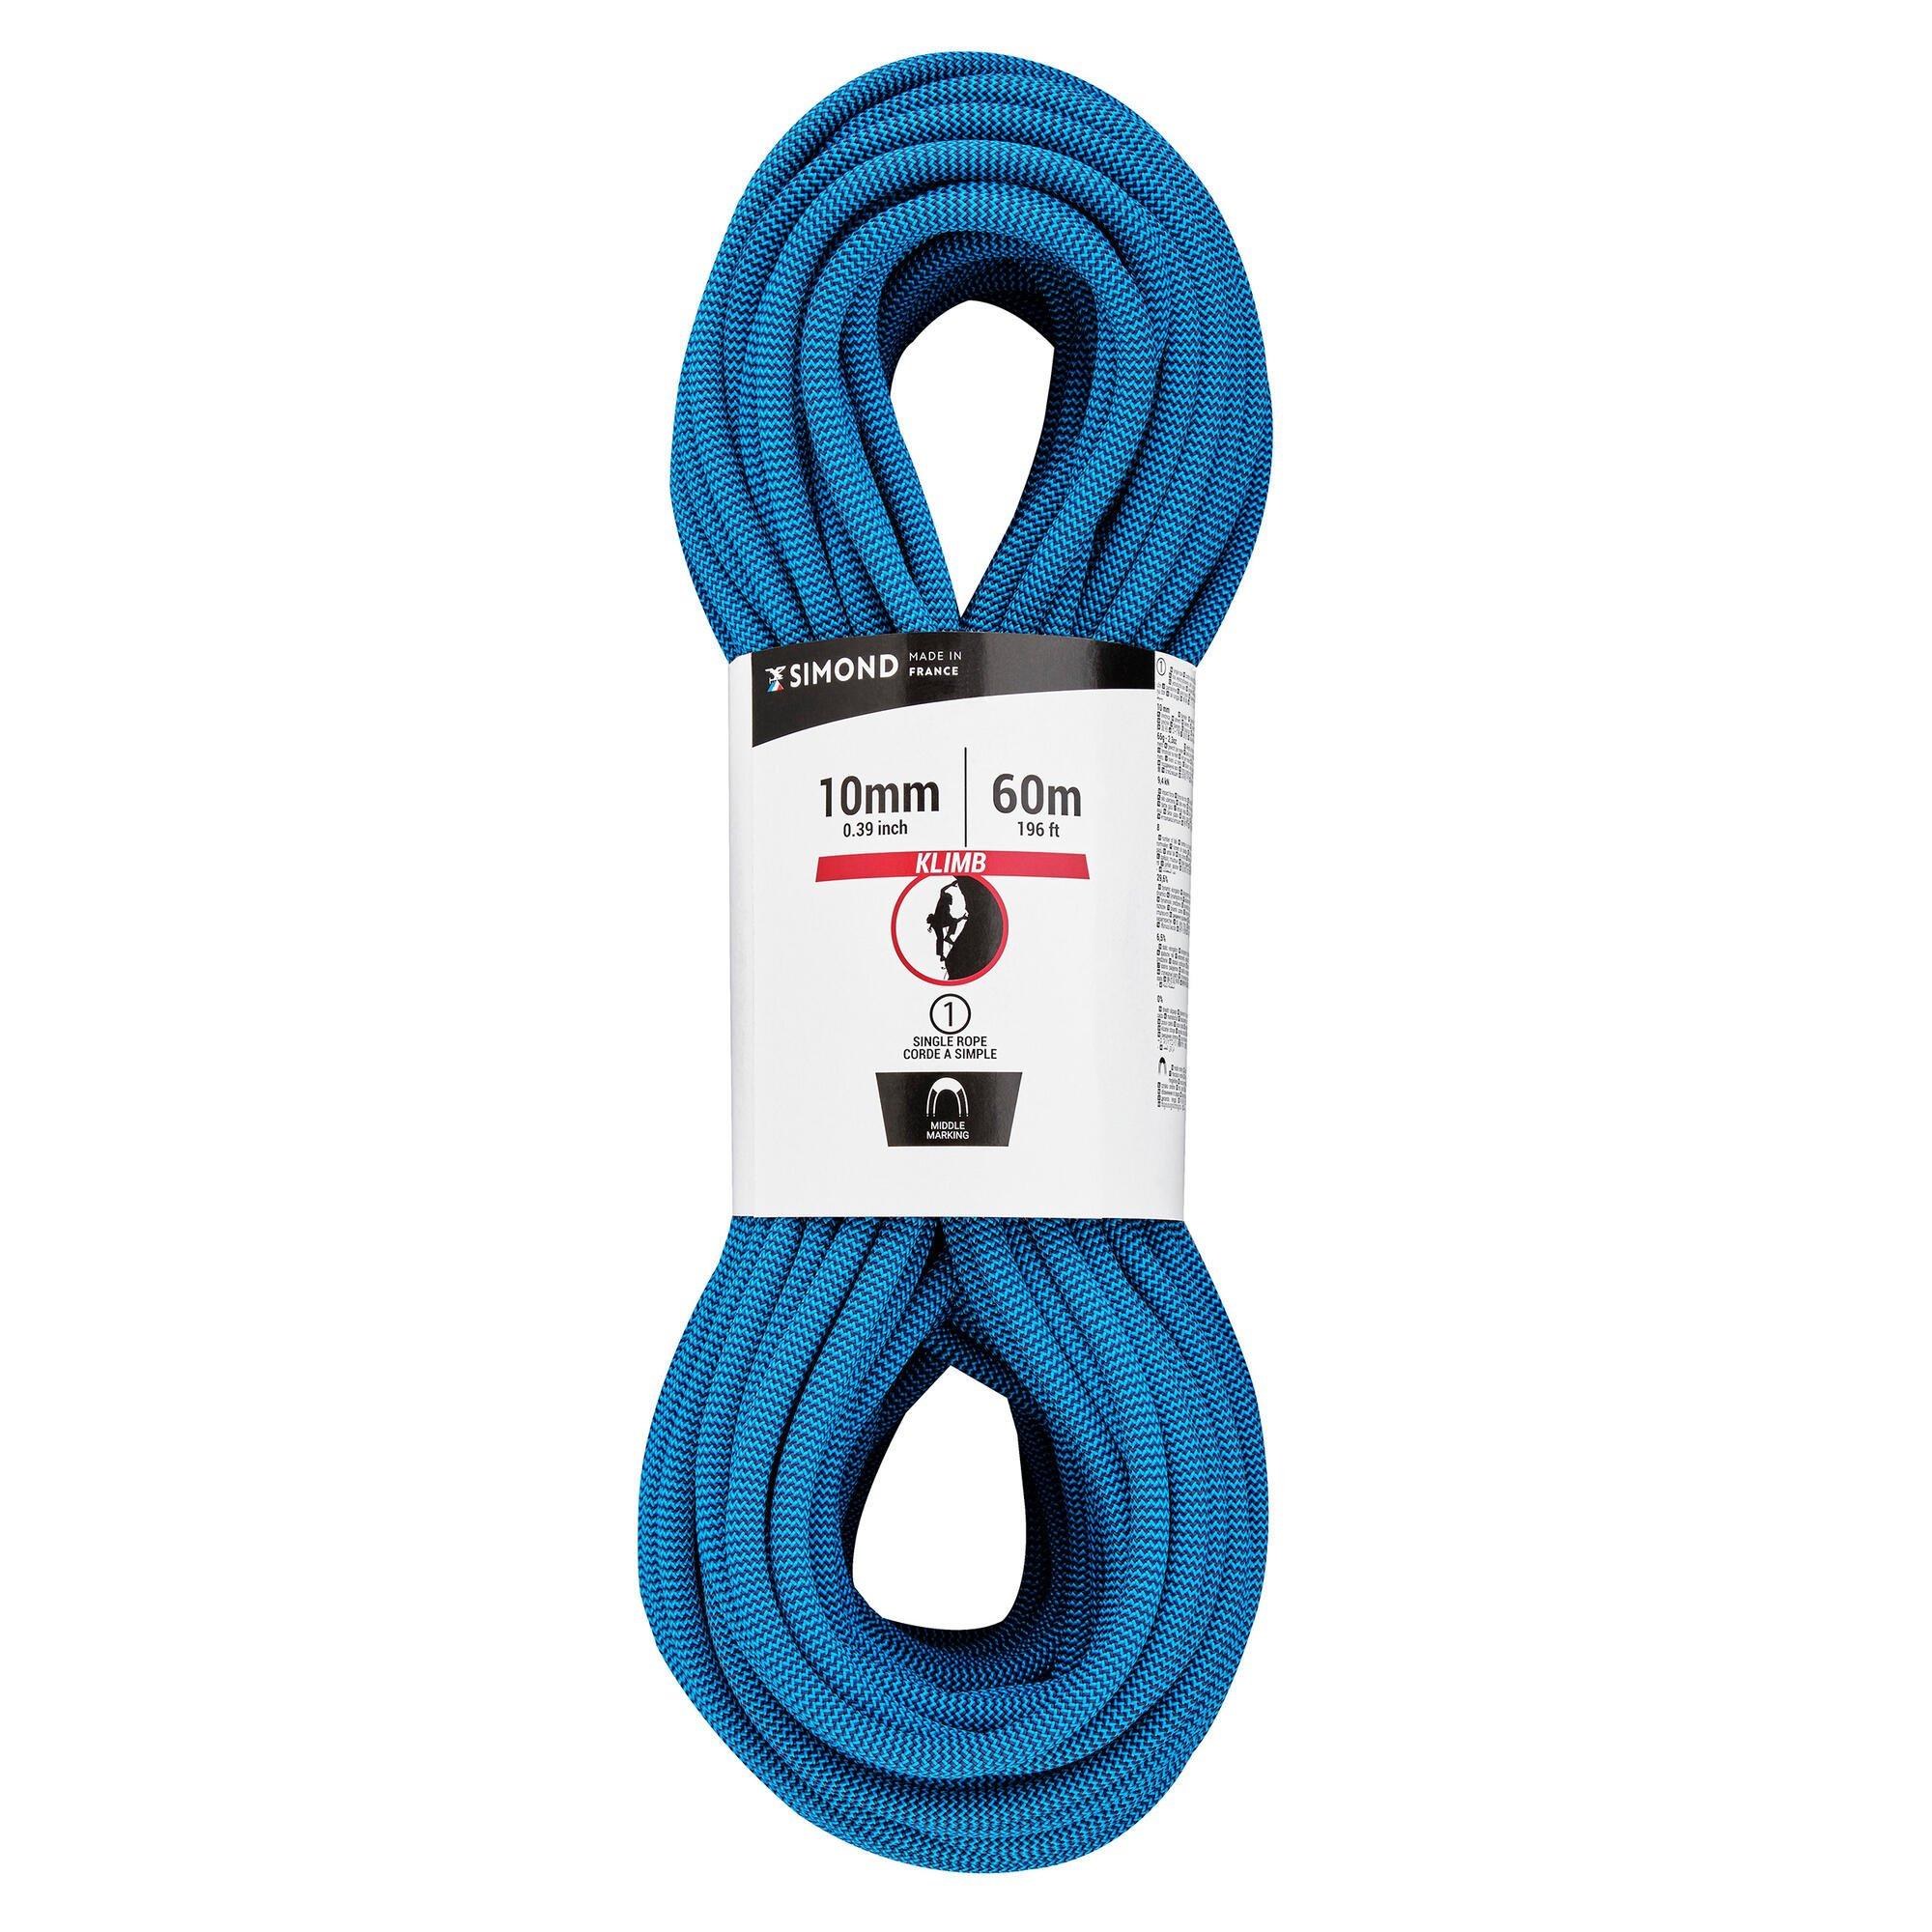 Веревка для скалолазания Decathlon 10 мм — подъем на 60 метров Simond, синий